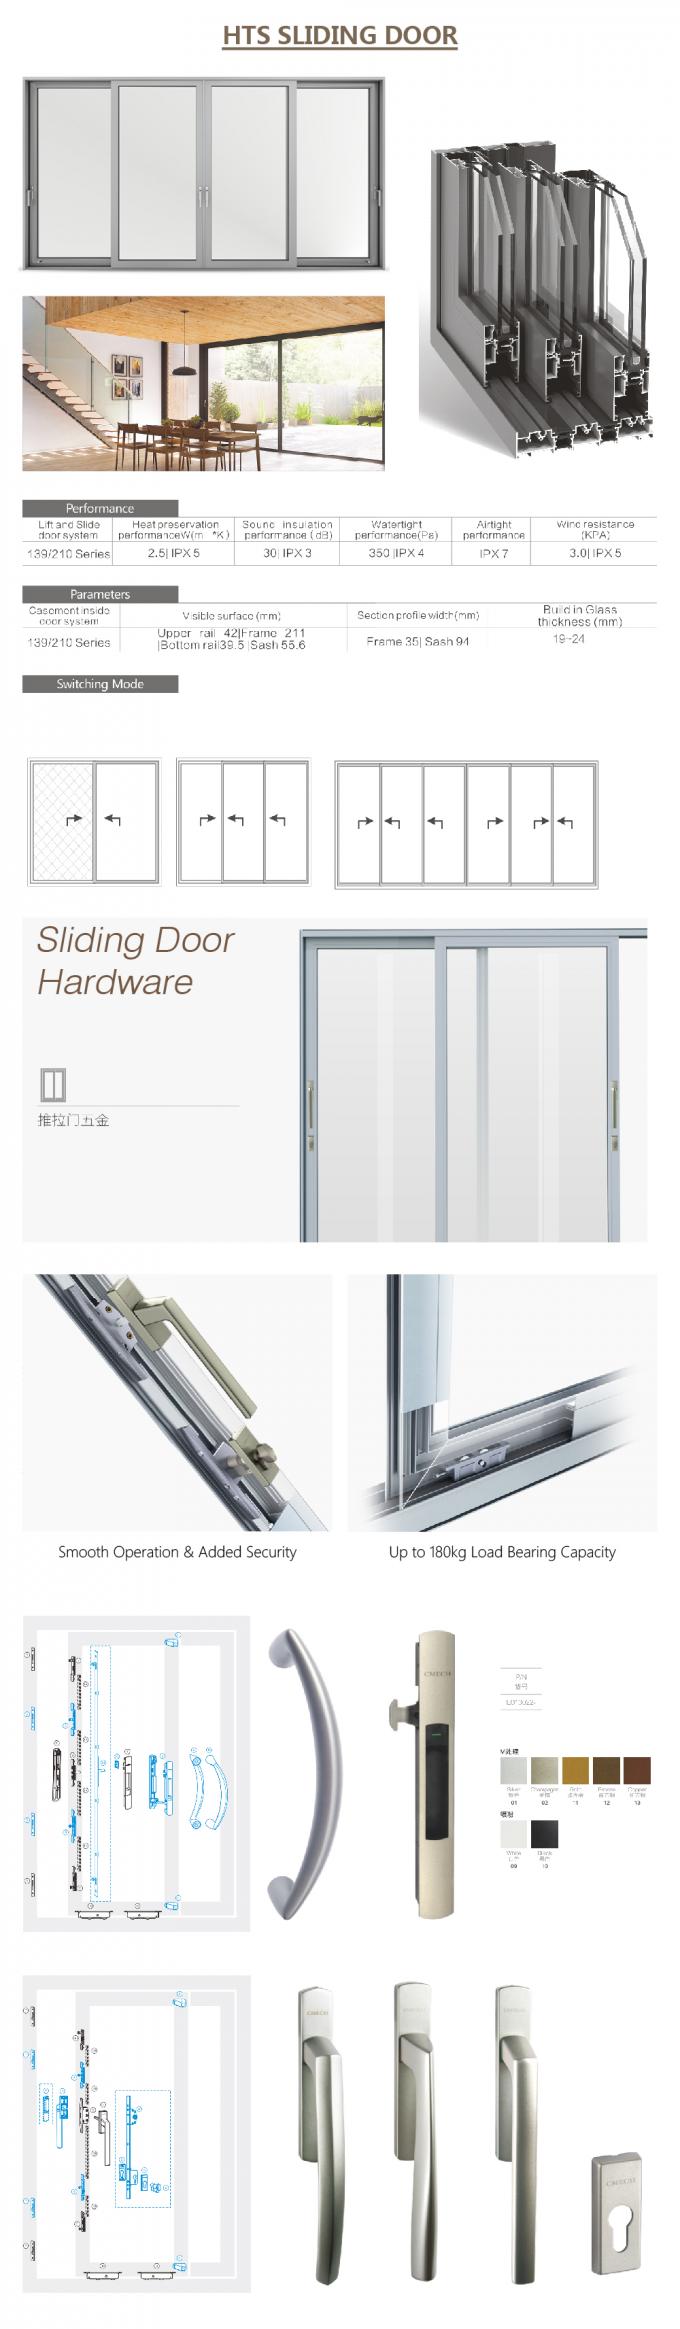 алюминиевые сползая стеклянные двери, складывая сползая стеклянные детали раздвижной двери doorsAluminium